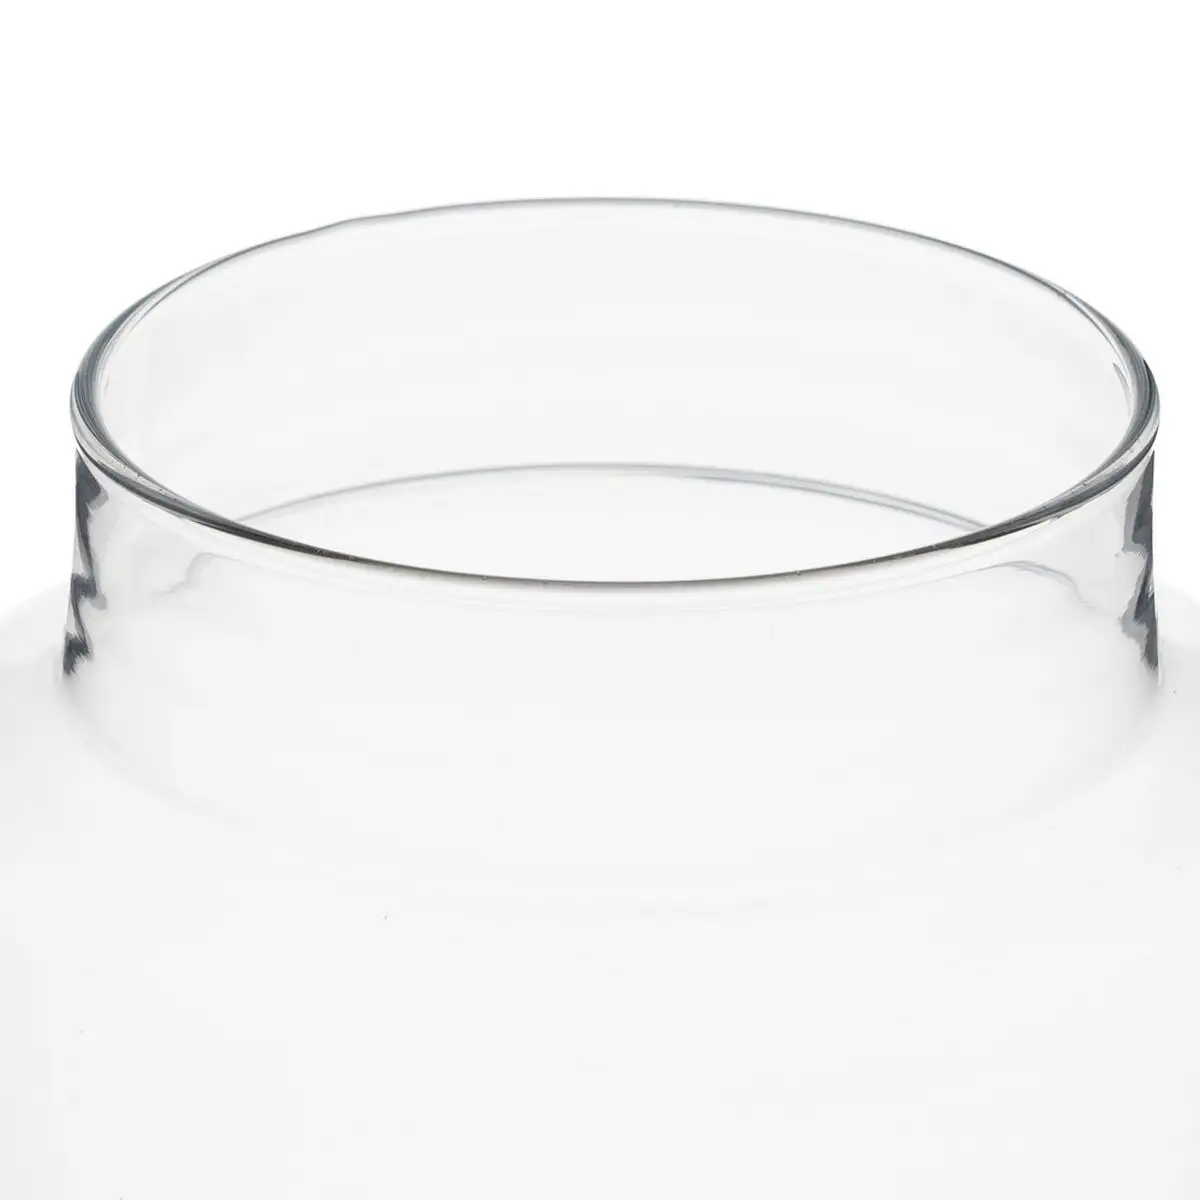 Vase cristal transparent 18 x 18 x 30 cm_6168. DIAYTAR SENEGAL - Là où la Diversité Rencontre la Qualité. Parcourez notre gamme complète et trouvez des produits qui incarnent la richesse et l'unicité du Sénégal.